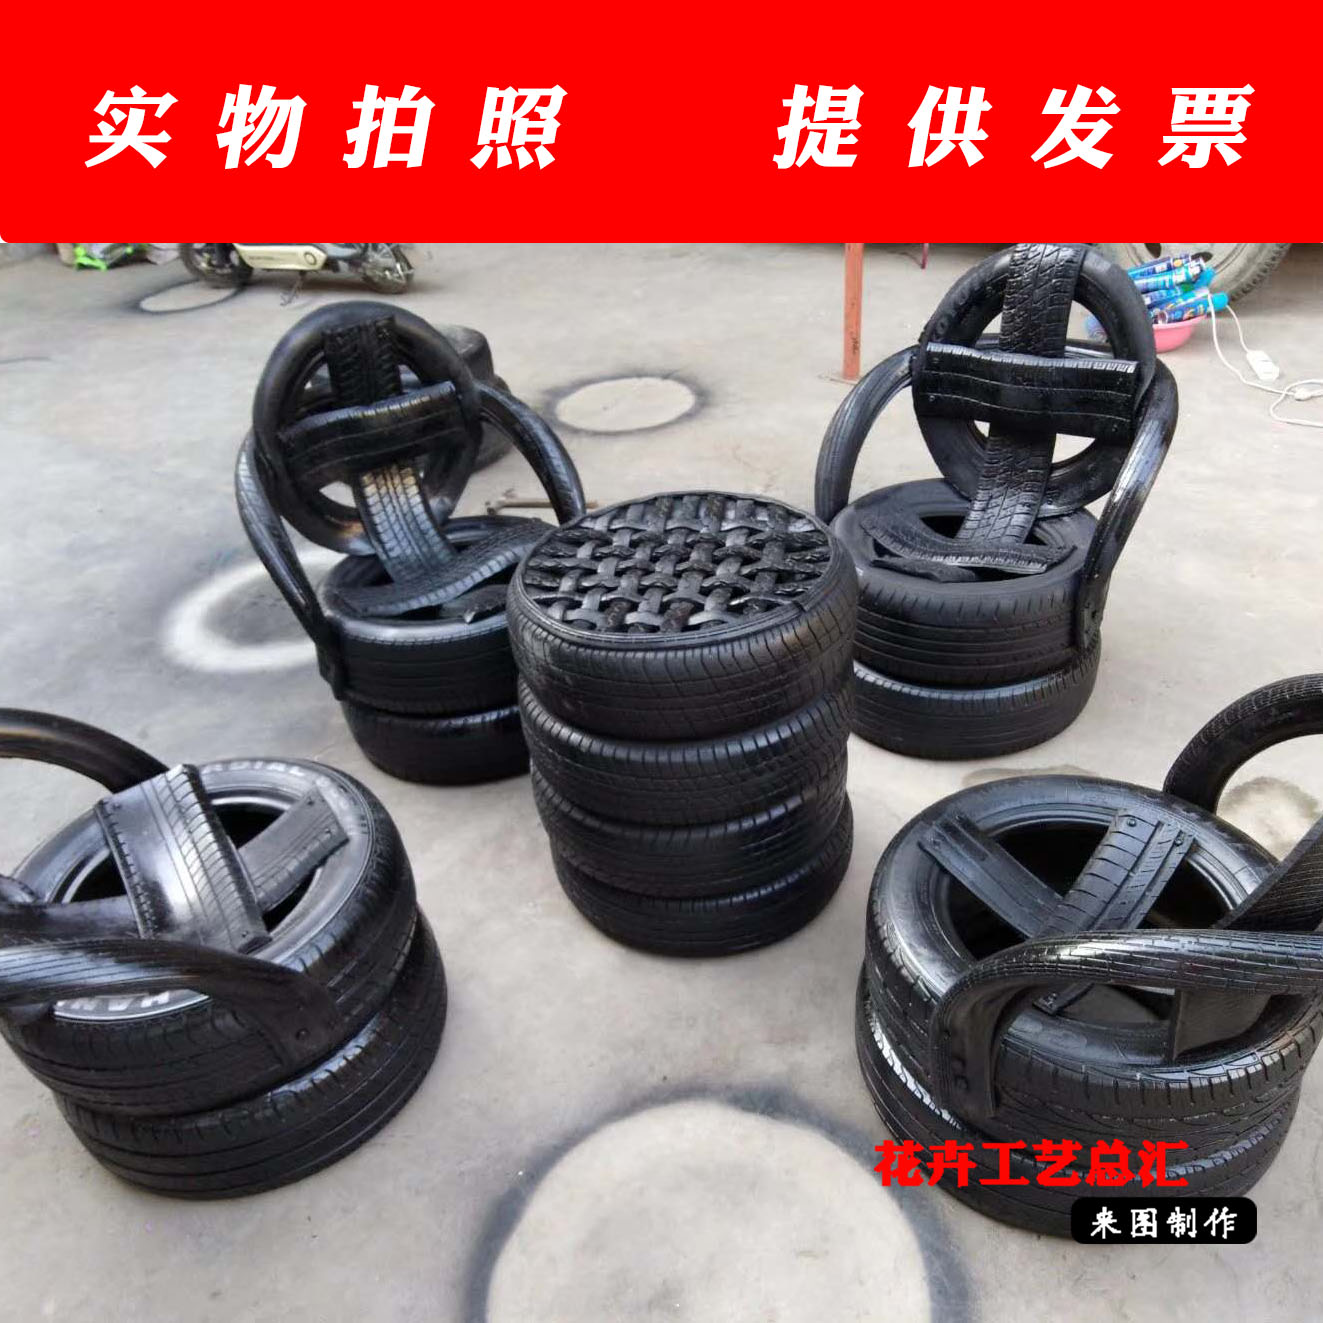 定制 轮胎工艺品轮胎 轮胎桌椅 创意装饰轮胎 轮胎改造造型